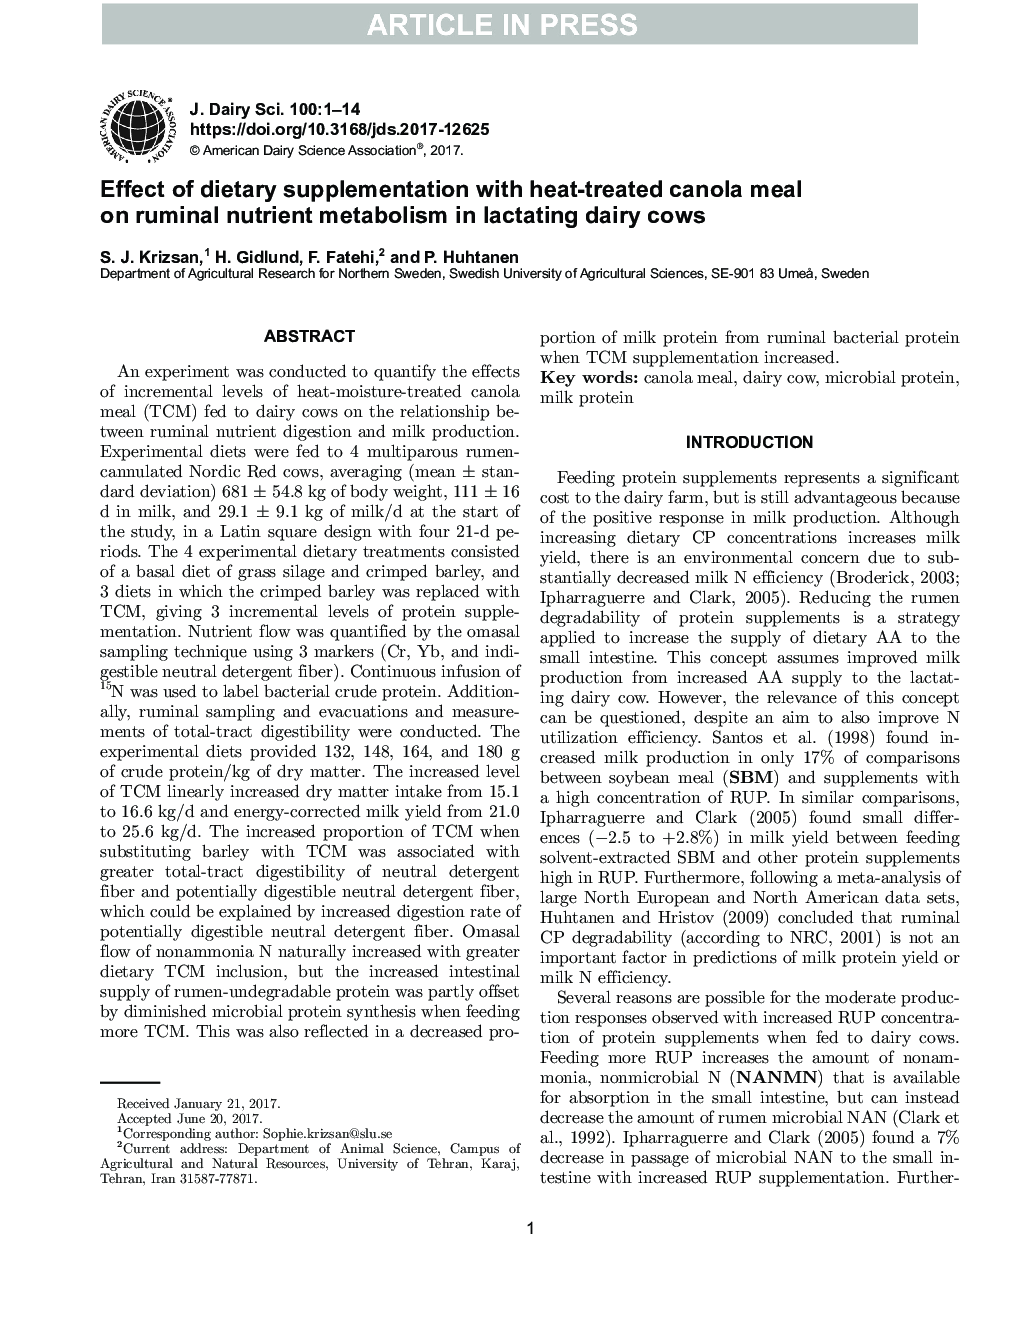 تأثیر مکمل های غذایی با وعده های غذایی کانولا با حرارت در متابولیسم مواد مغذی شوری در گاو های شیرده 